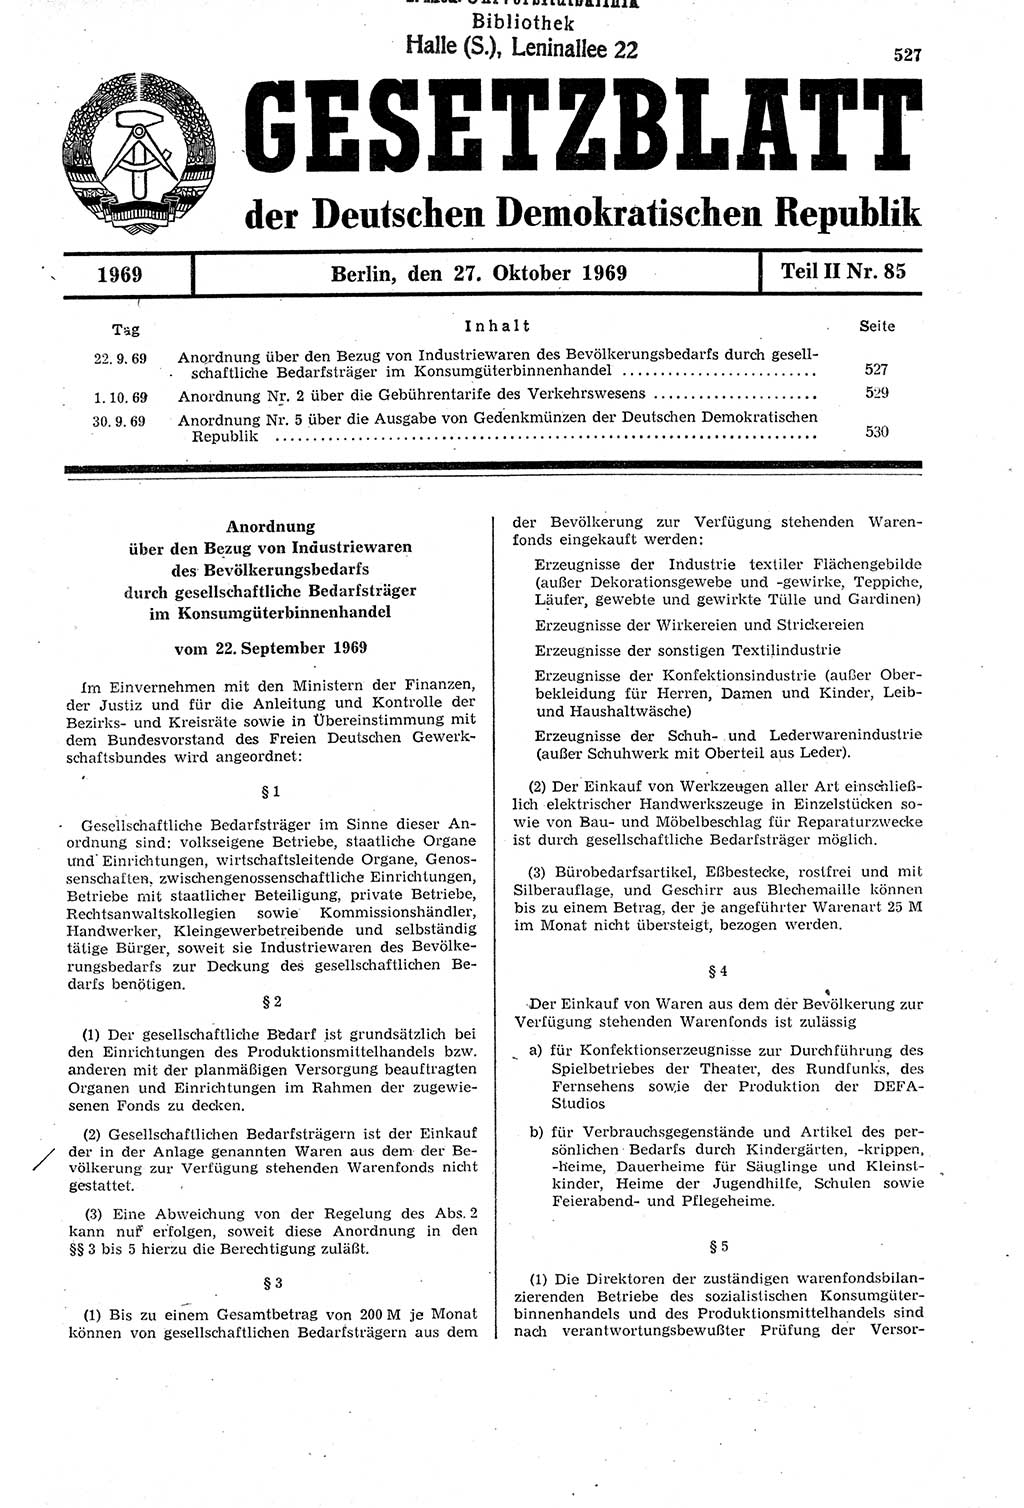 Gesetzblatt (GBl.) der Deutschen Demokratischen Republik (DDR) Teil ⅠⅠ 1969, Seite 527 (GBl. DDR ⅠⅠ 1969, S. 527)